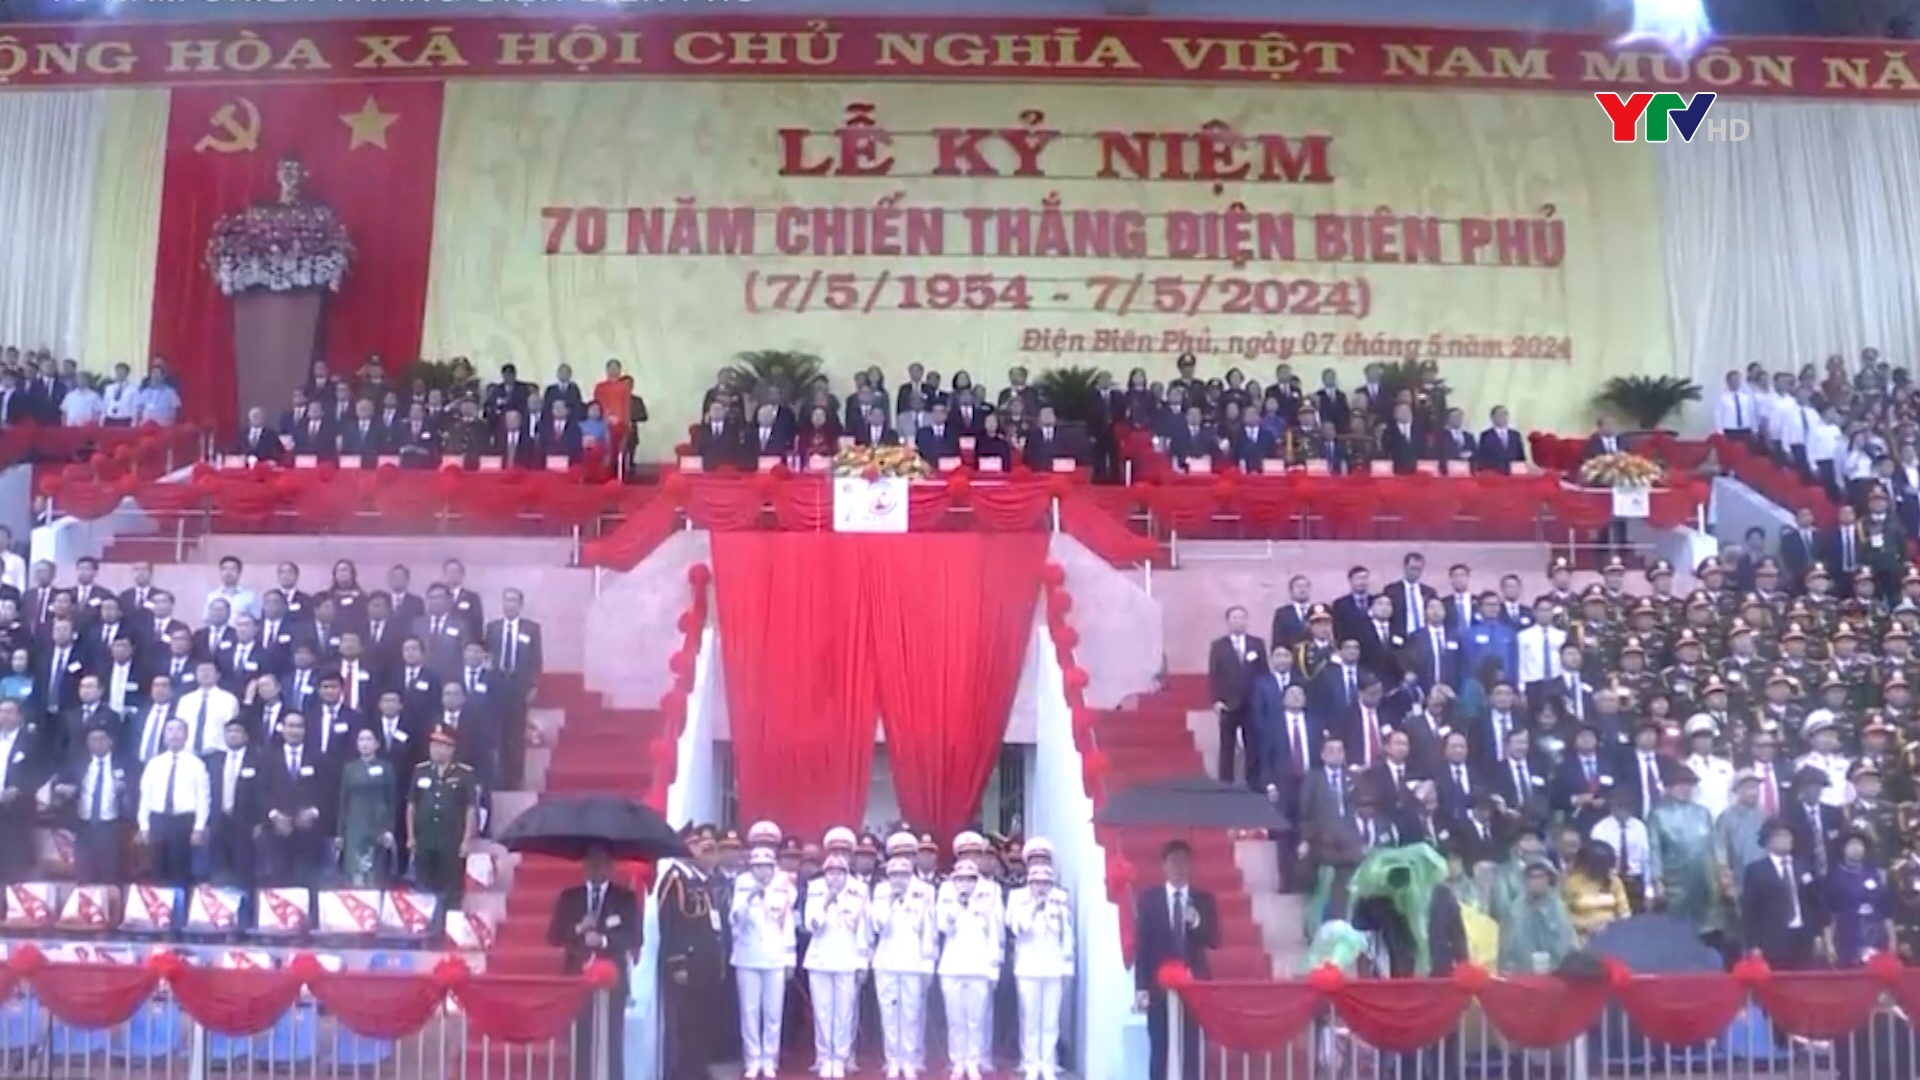 Trọng thể kỷ niệm 70 năm Chiến thắng Điện Biên Phủ